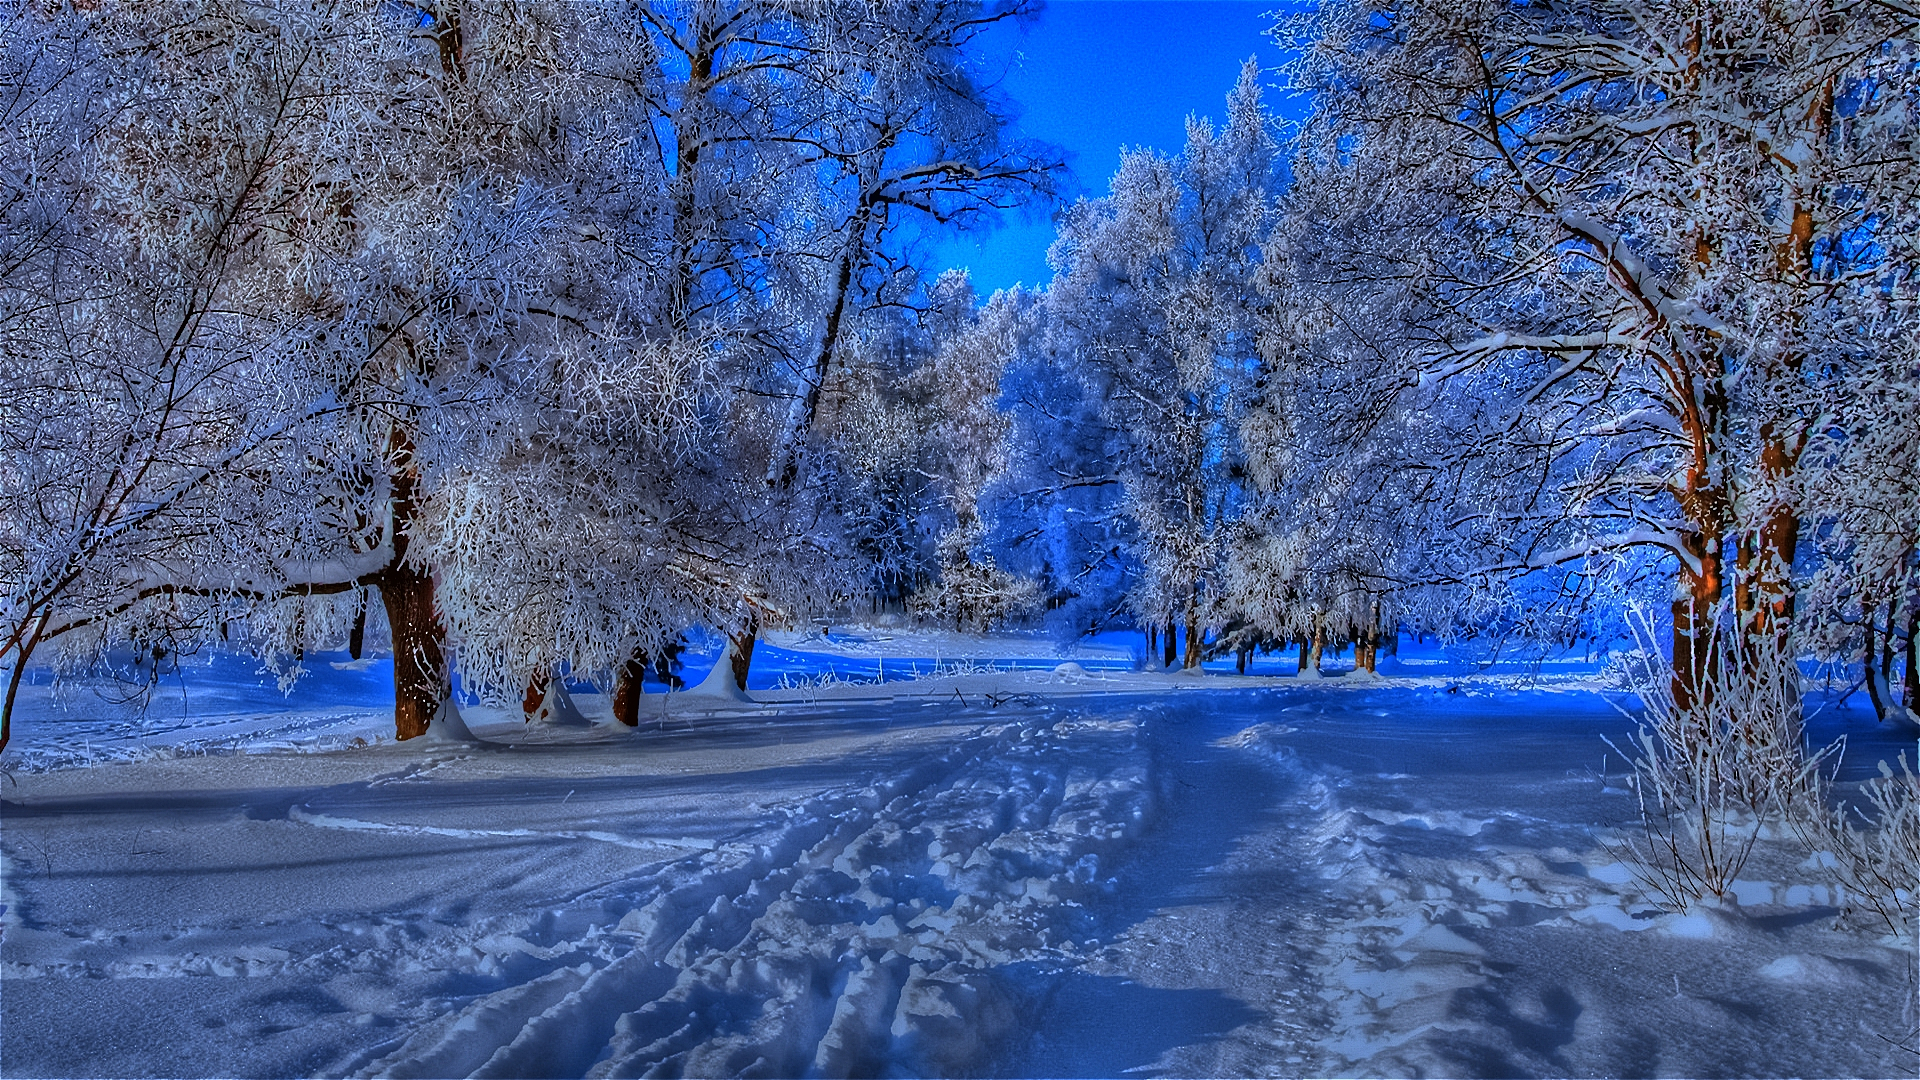 Скачать обои бесплатно Зима, Снег, Лес, Дерево, Сумерки, Дорожка, Земля/природа картинка на рабочий стол ПК